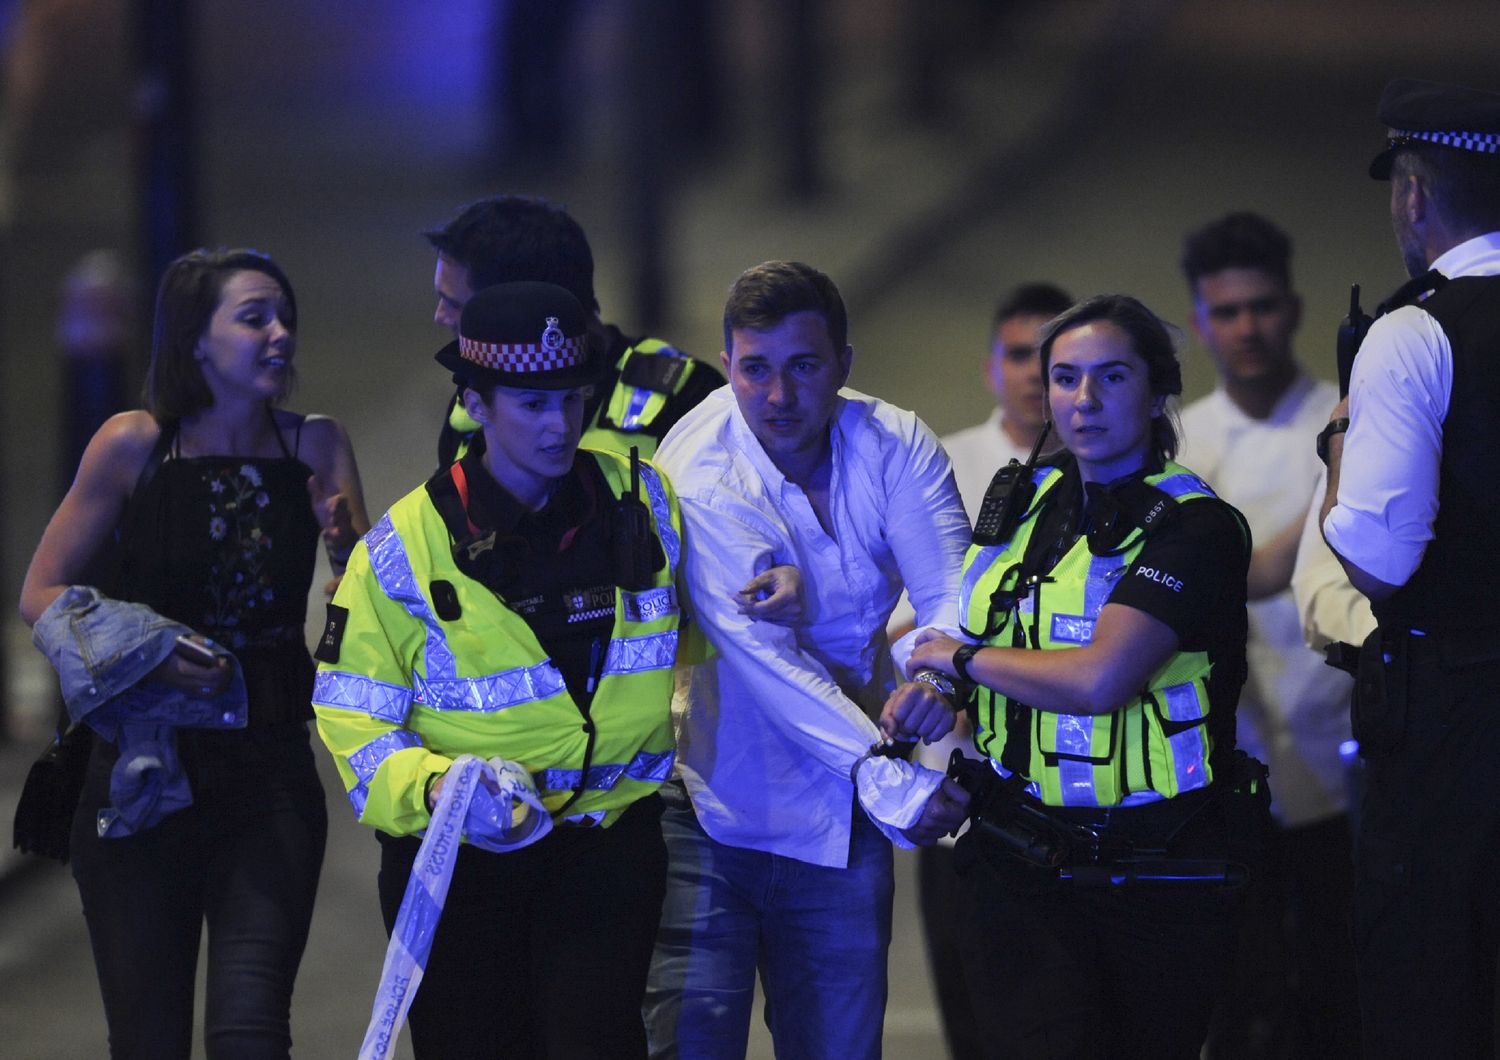 Furgone sulla folla a Londra. Durante tutta la notte e questa mattina le forze speciali e la Polizia stanno battendo a tappeto la citt&agrave; alla ricerca di possibili complici dei terroristi che ieri sera si sono lanciati con un furgone sulla folla a London Bridge, facendo 7 morti. La Polizia non esclude nuovi attentati, ma invita la cittadinanza ad una 'calma vigile'. Per ora, 48 i feriti. Afp)